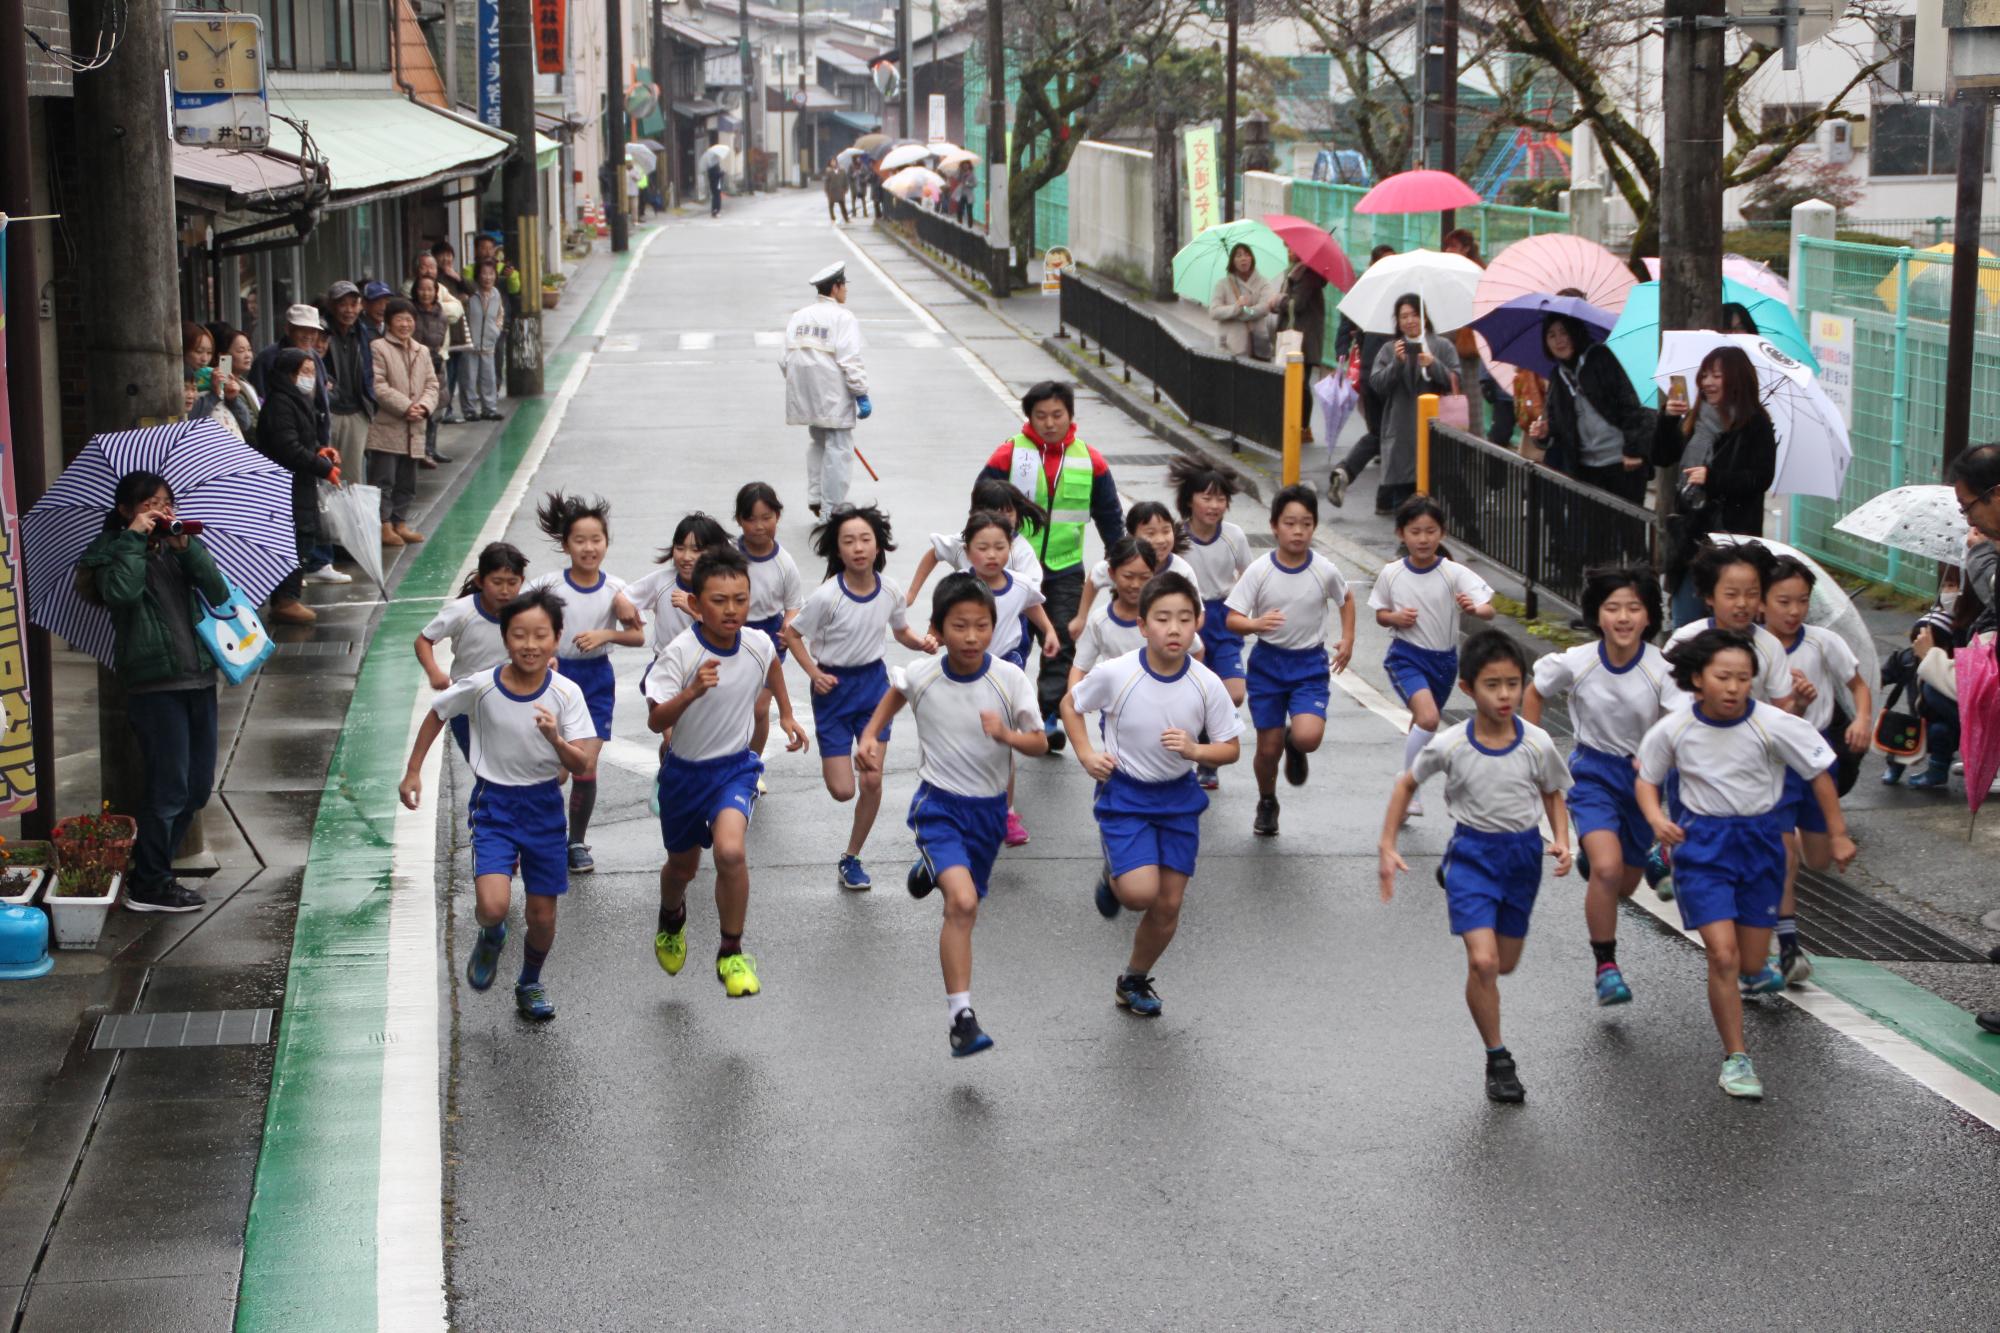 マラソン大会で千種小学校3・4年生らがスタートした直後の写真